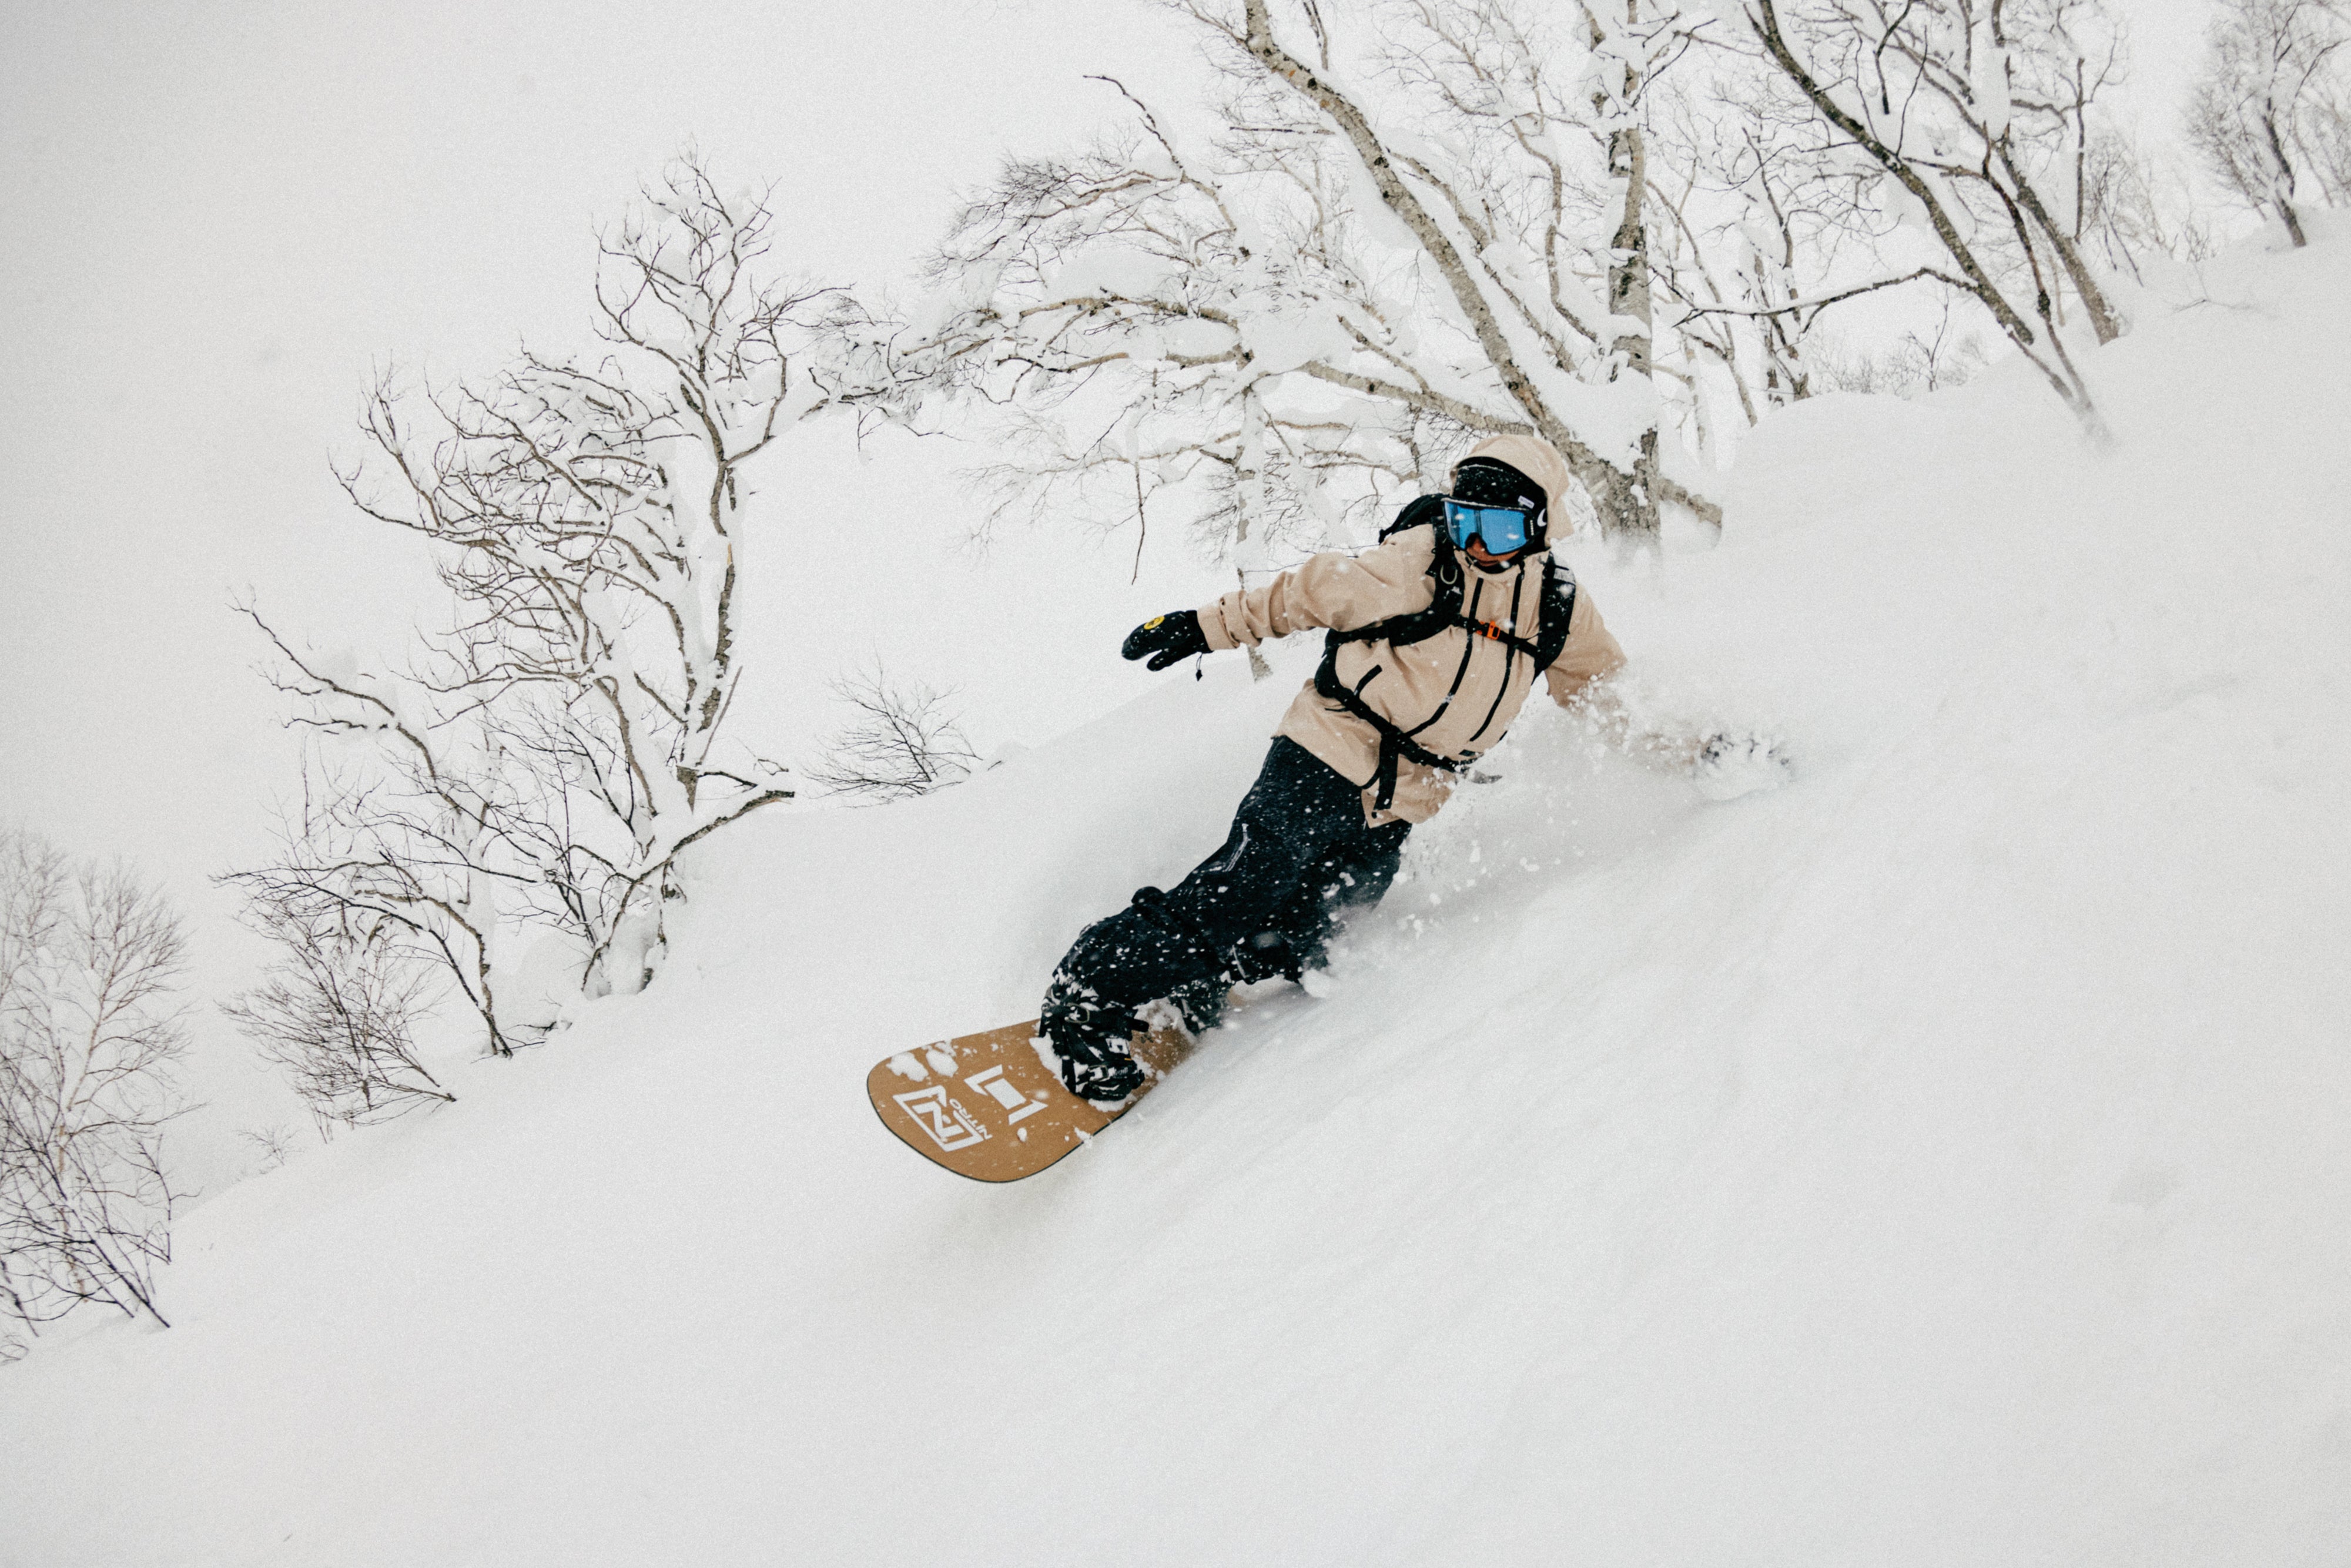 95B04480010 – Porte-skis/snowboards accessoire – Poitiers